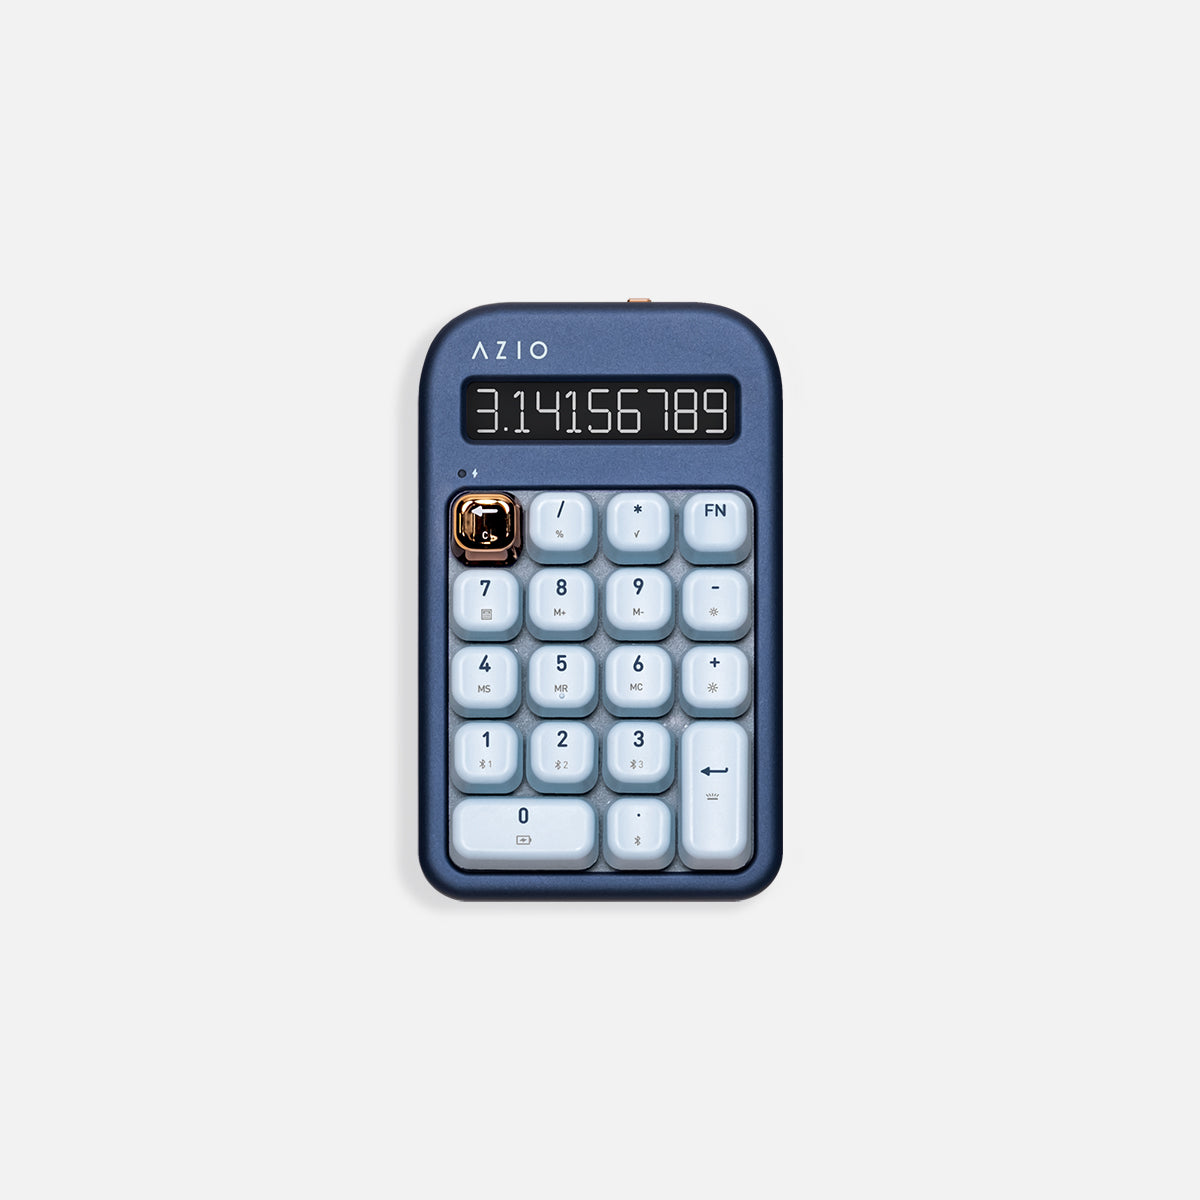 Izo numeryczny / kalkulator (niebieski przełącznik)